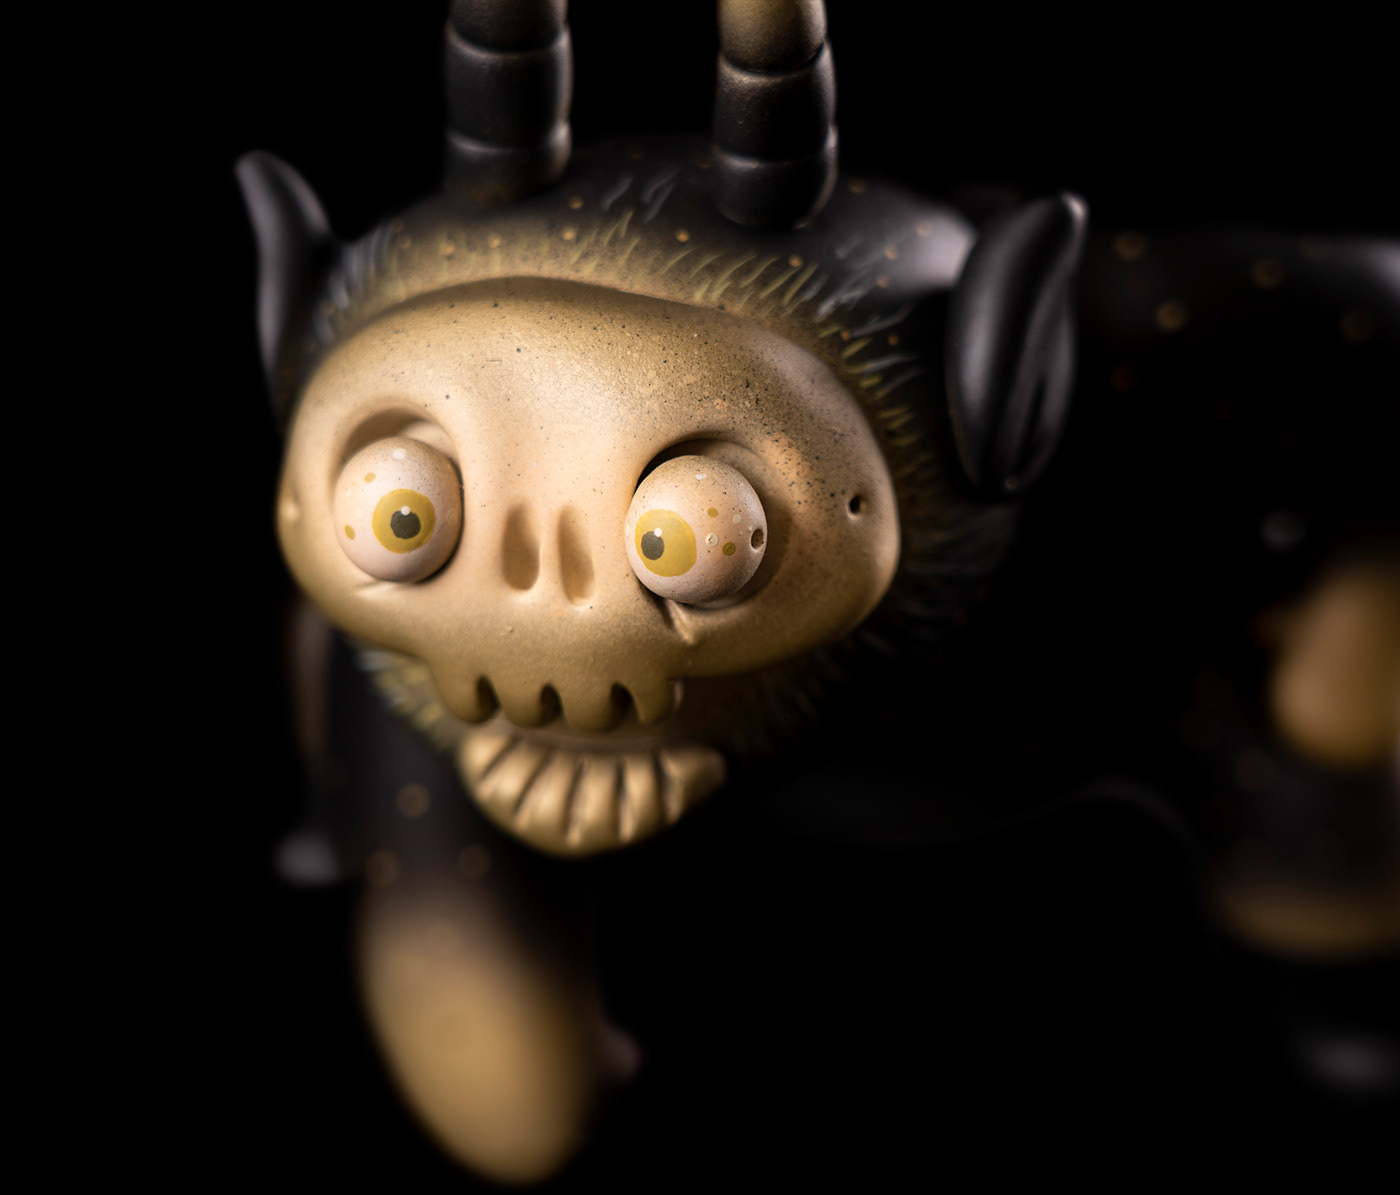 artoy Character design  Digital Art  handmade modeling sculpting  sculpture skull spray paint toys